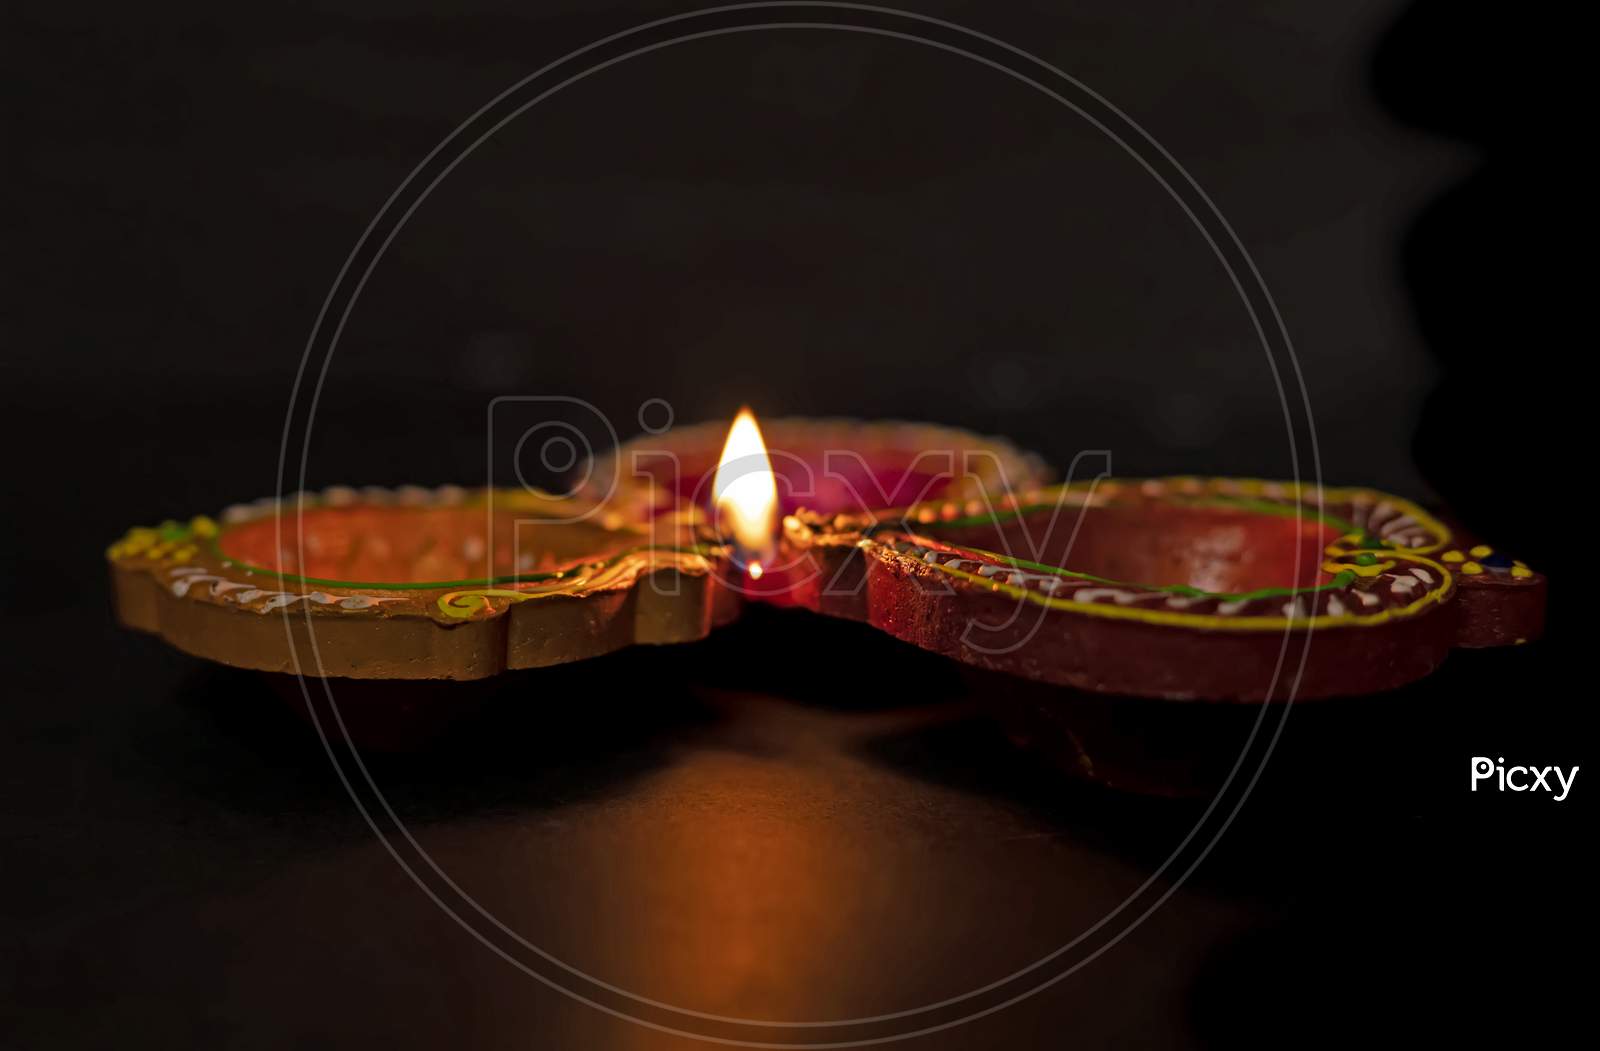 Happy Diwali - Diya Lamps Lit During Diwali Celebration